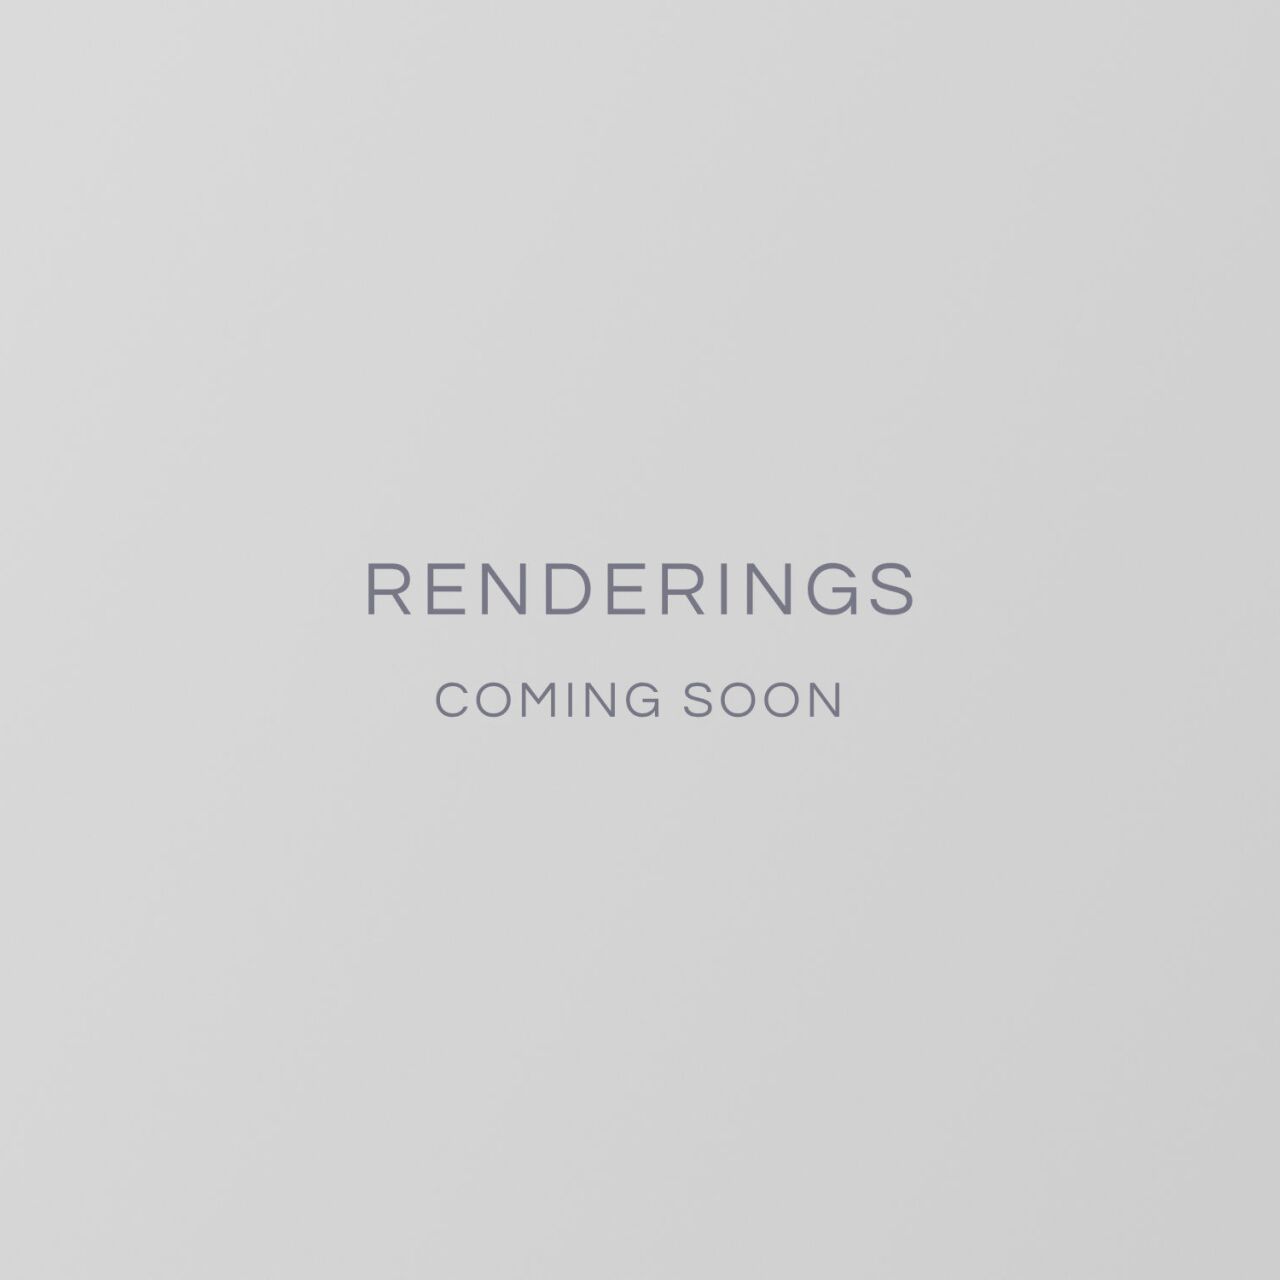 Renderings Coming Soon